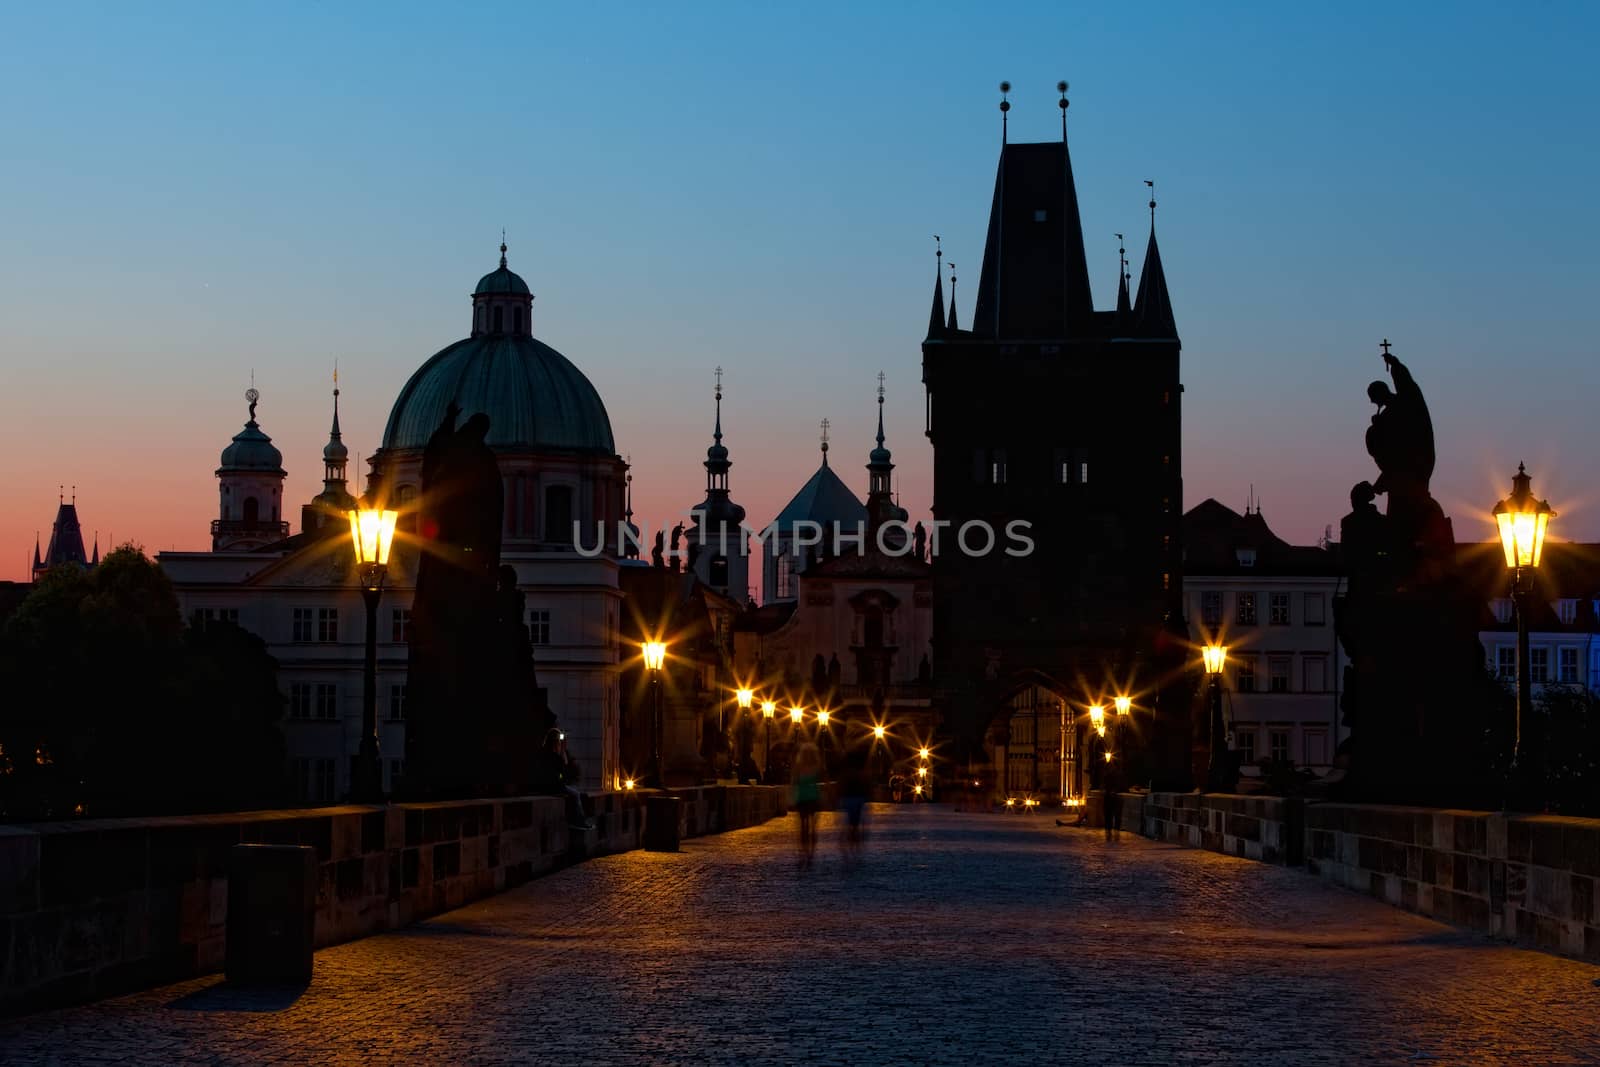 Sunrise on Charles bridge in Prague by elena_shchipkova